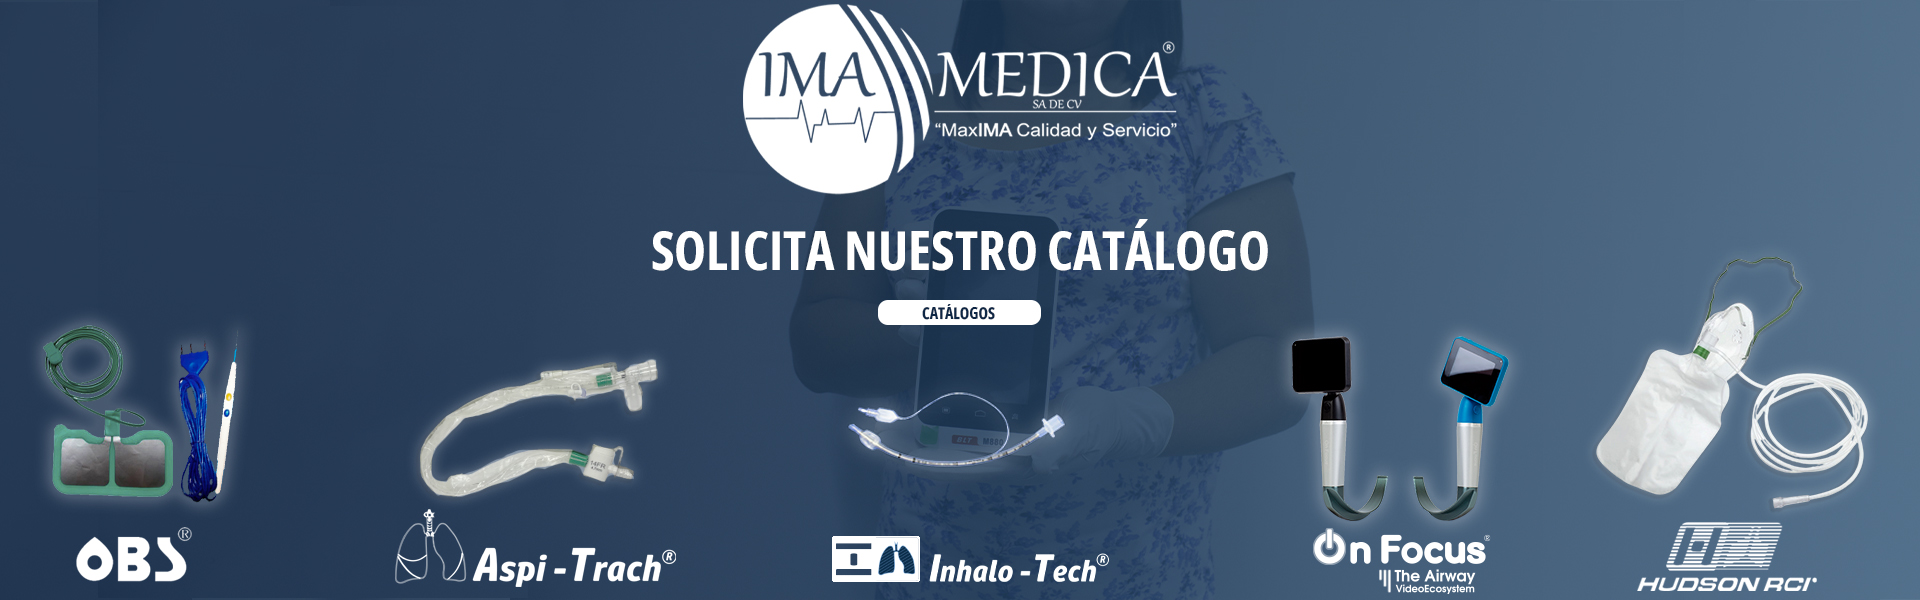 Catálogo IMA Medica